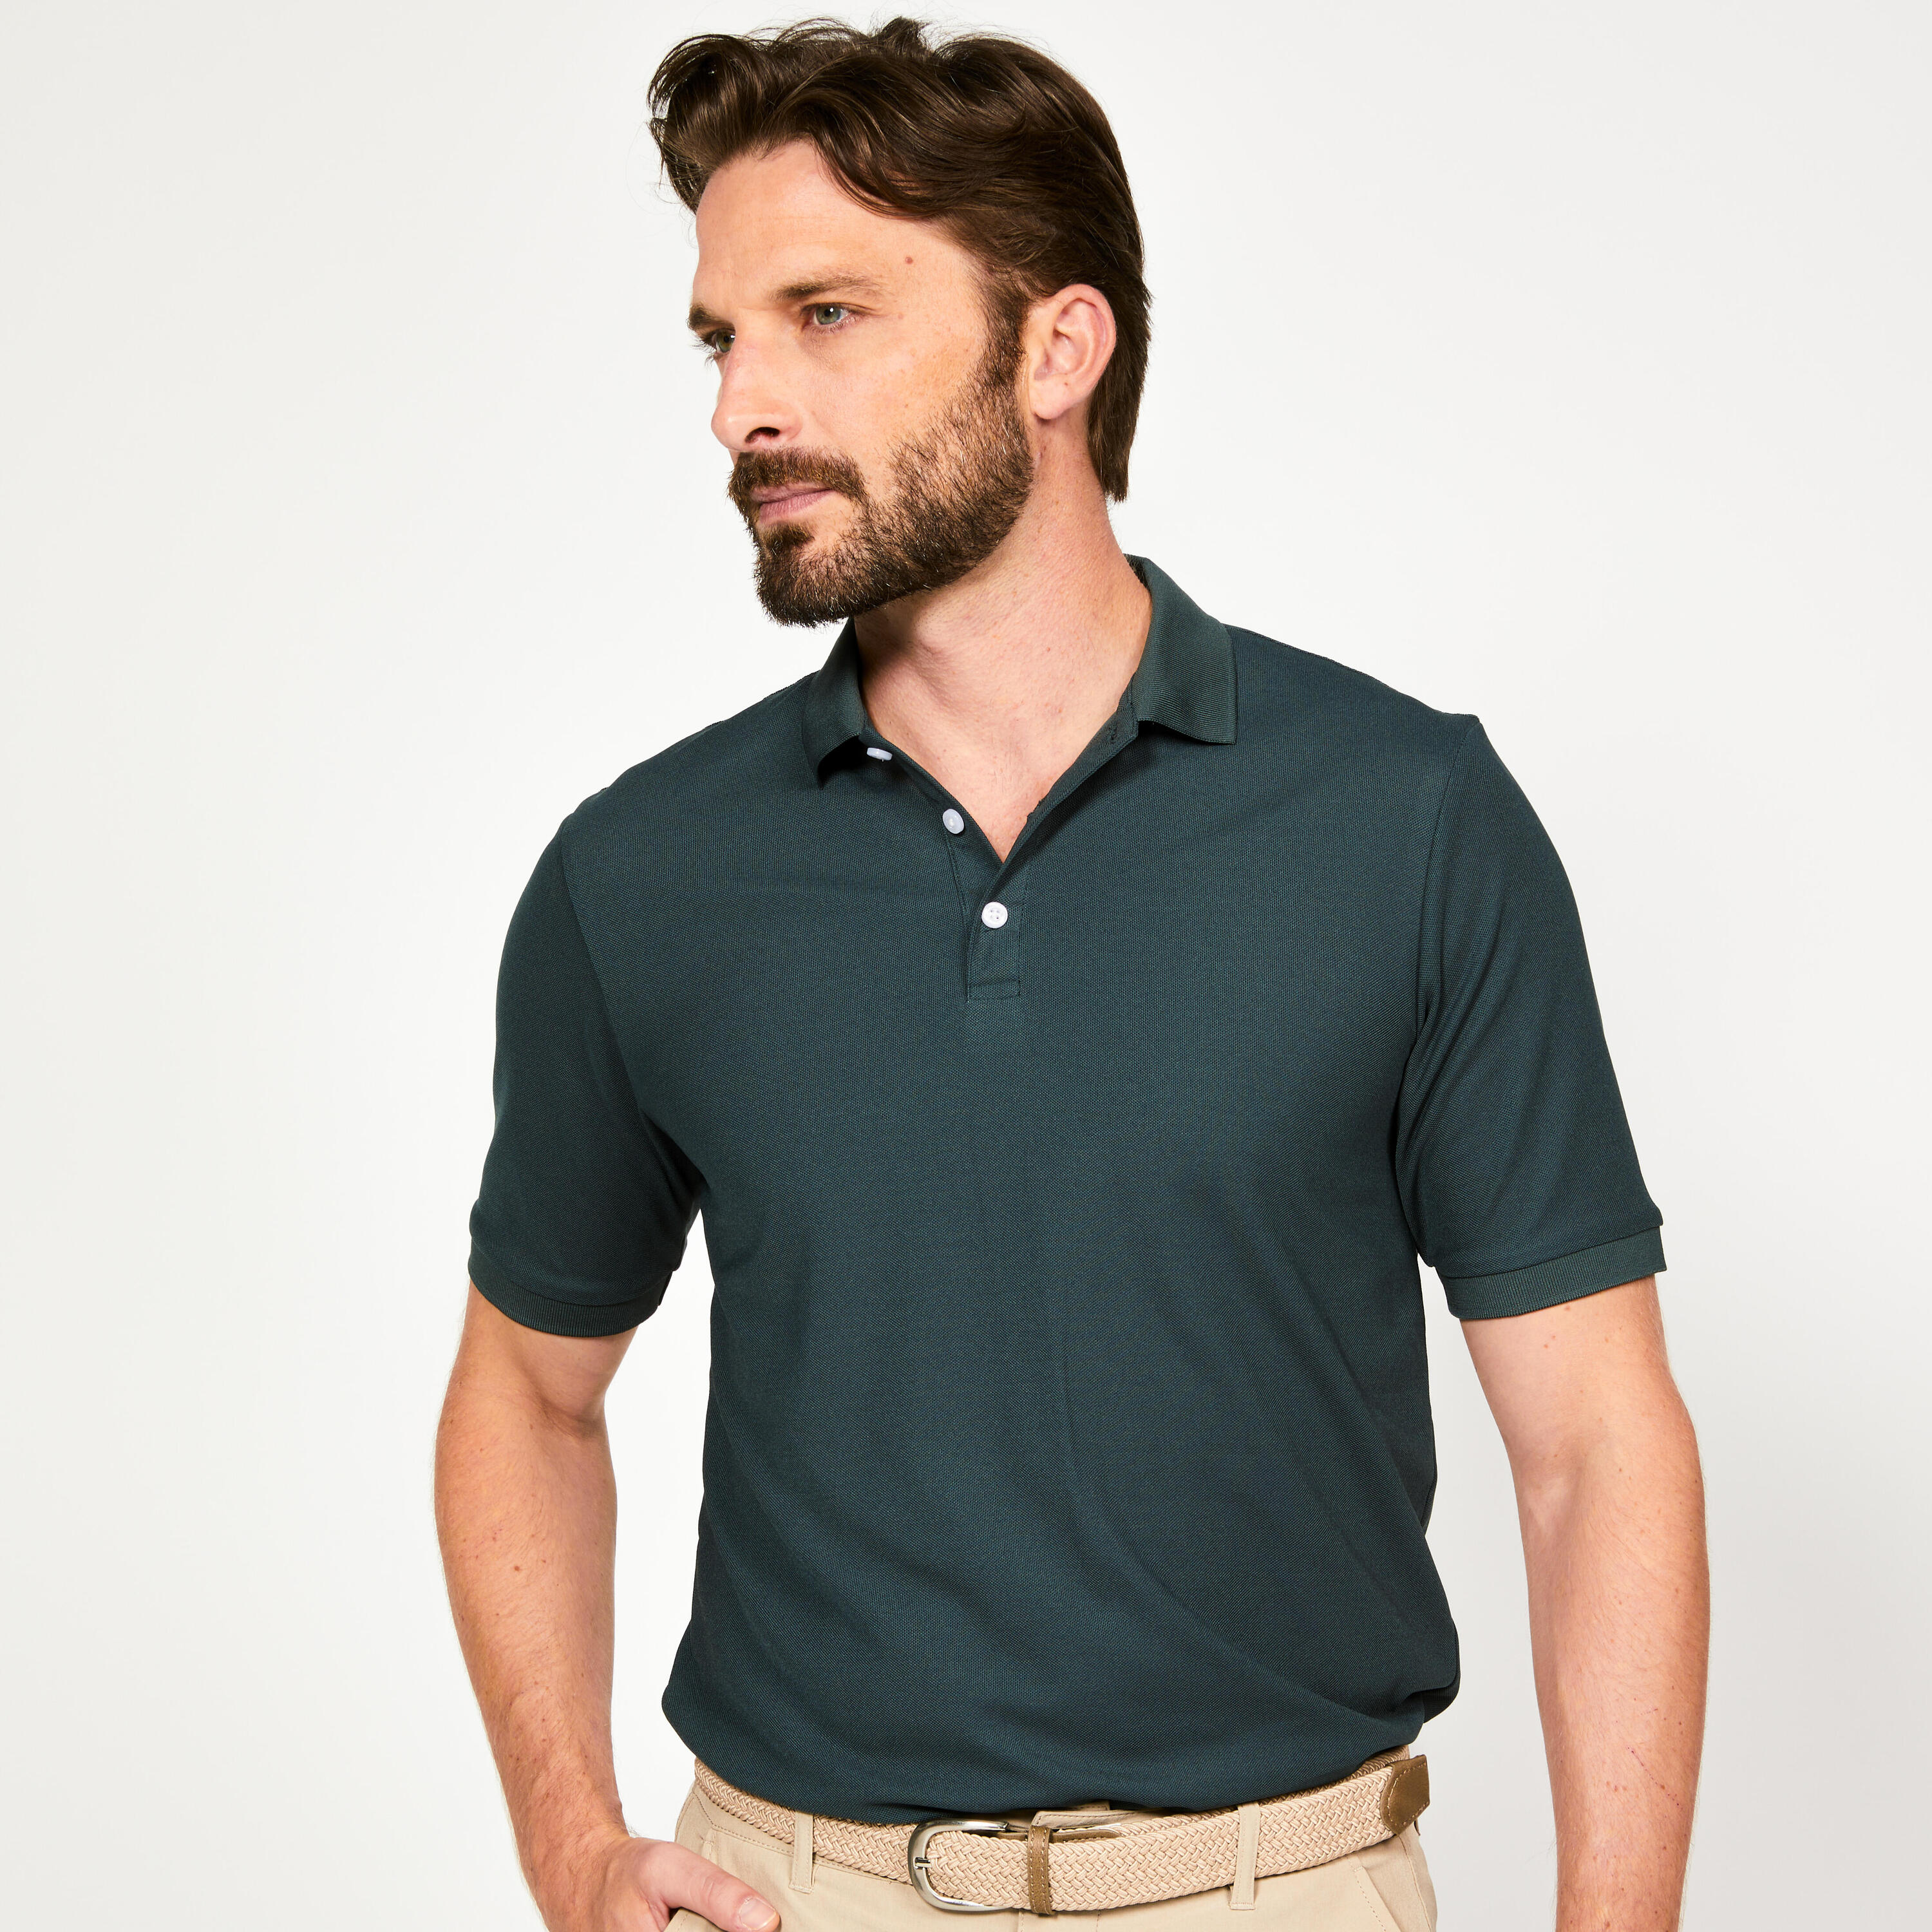 Men's short-sleeved golf polo shirt - WW500 green 1/5